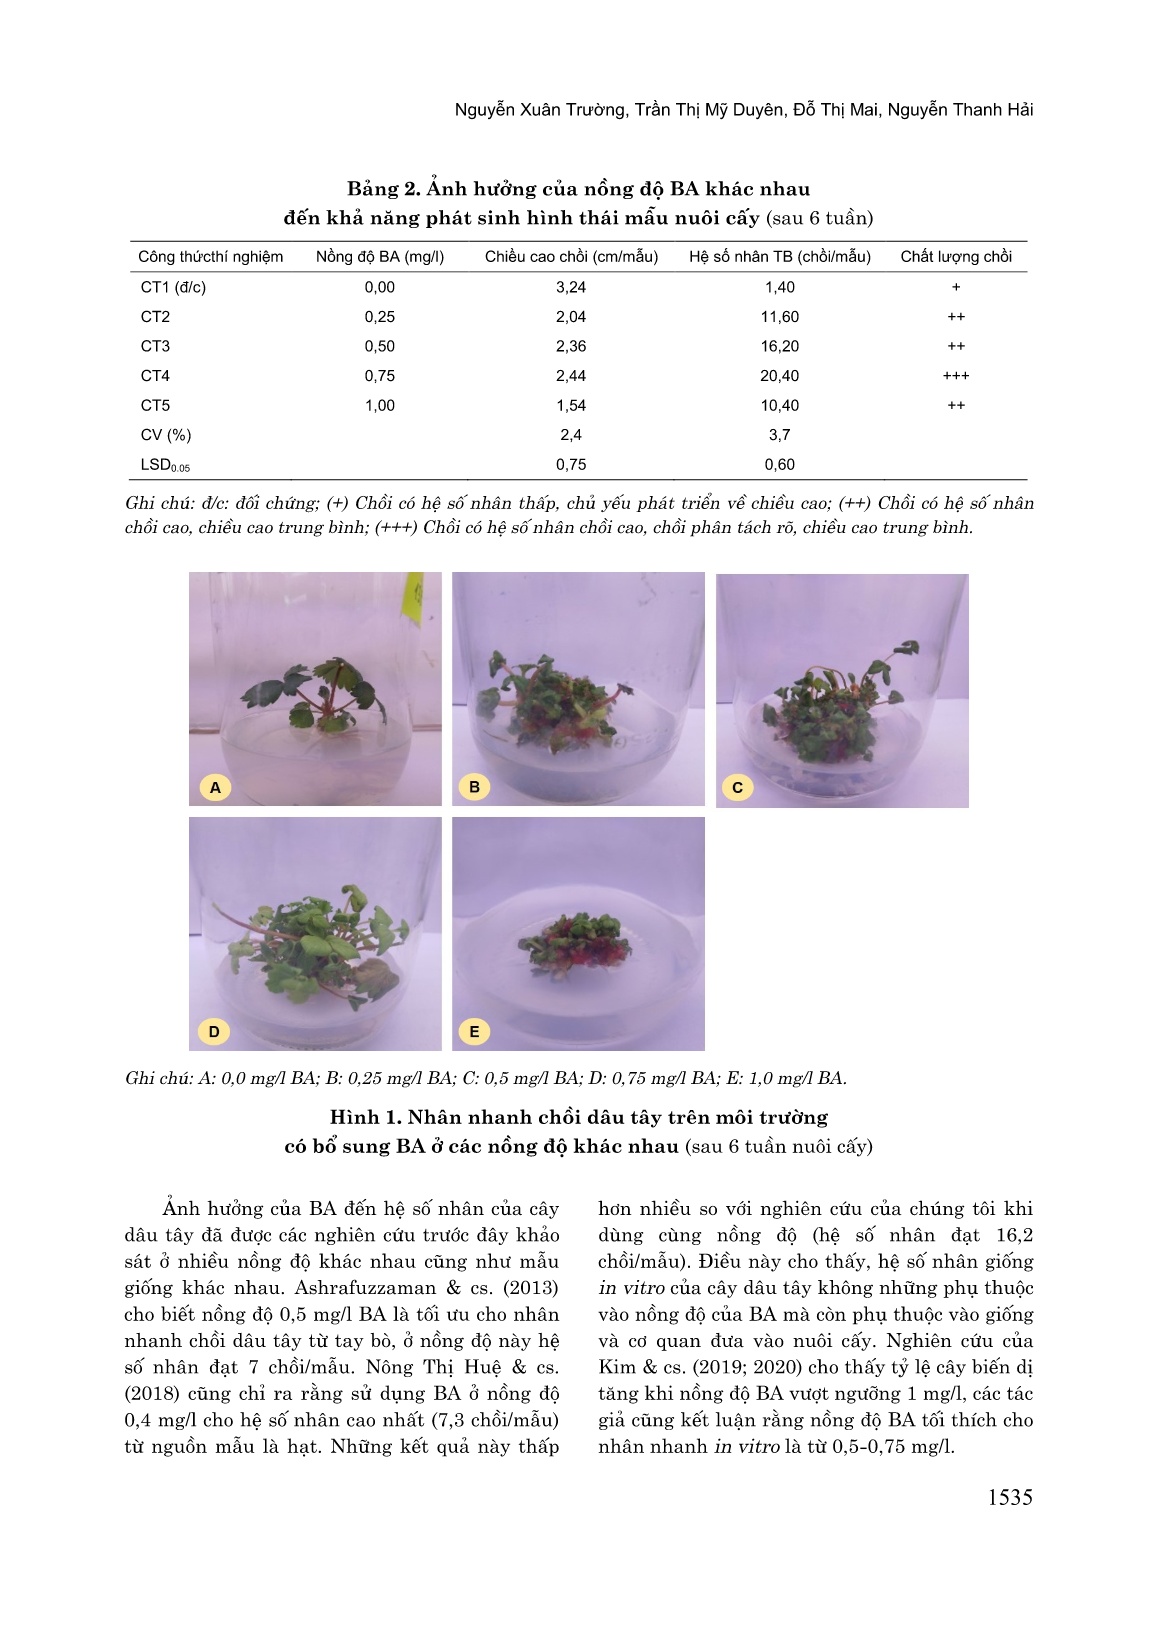 Nhân nhanh in vitro dâu tây (Fragaria x Ananassa Duch) giống “Sunraku” nhập nội từ Nhật Bản trang 5